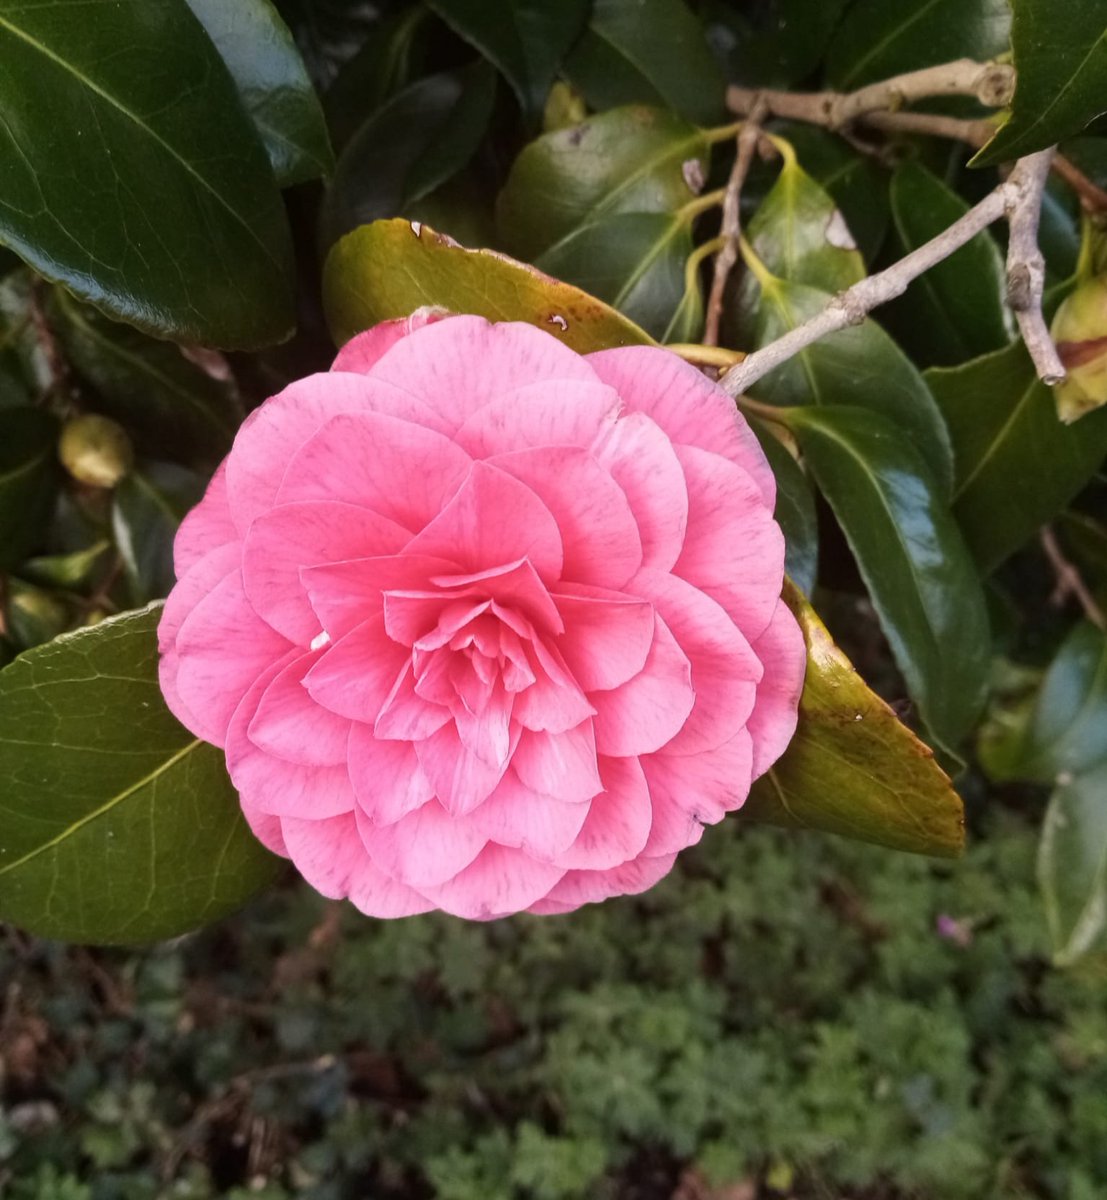 A pretty Camellia in bloom 🌸
#JoyInSpring